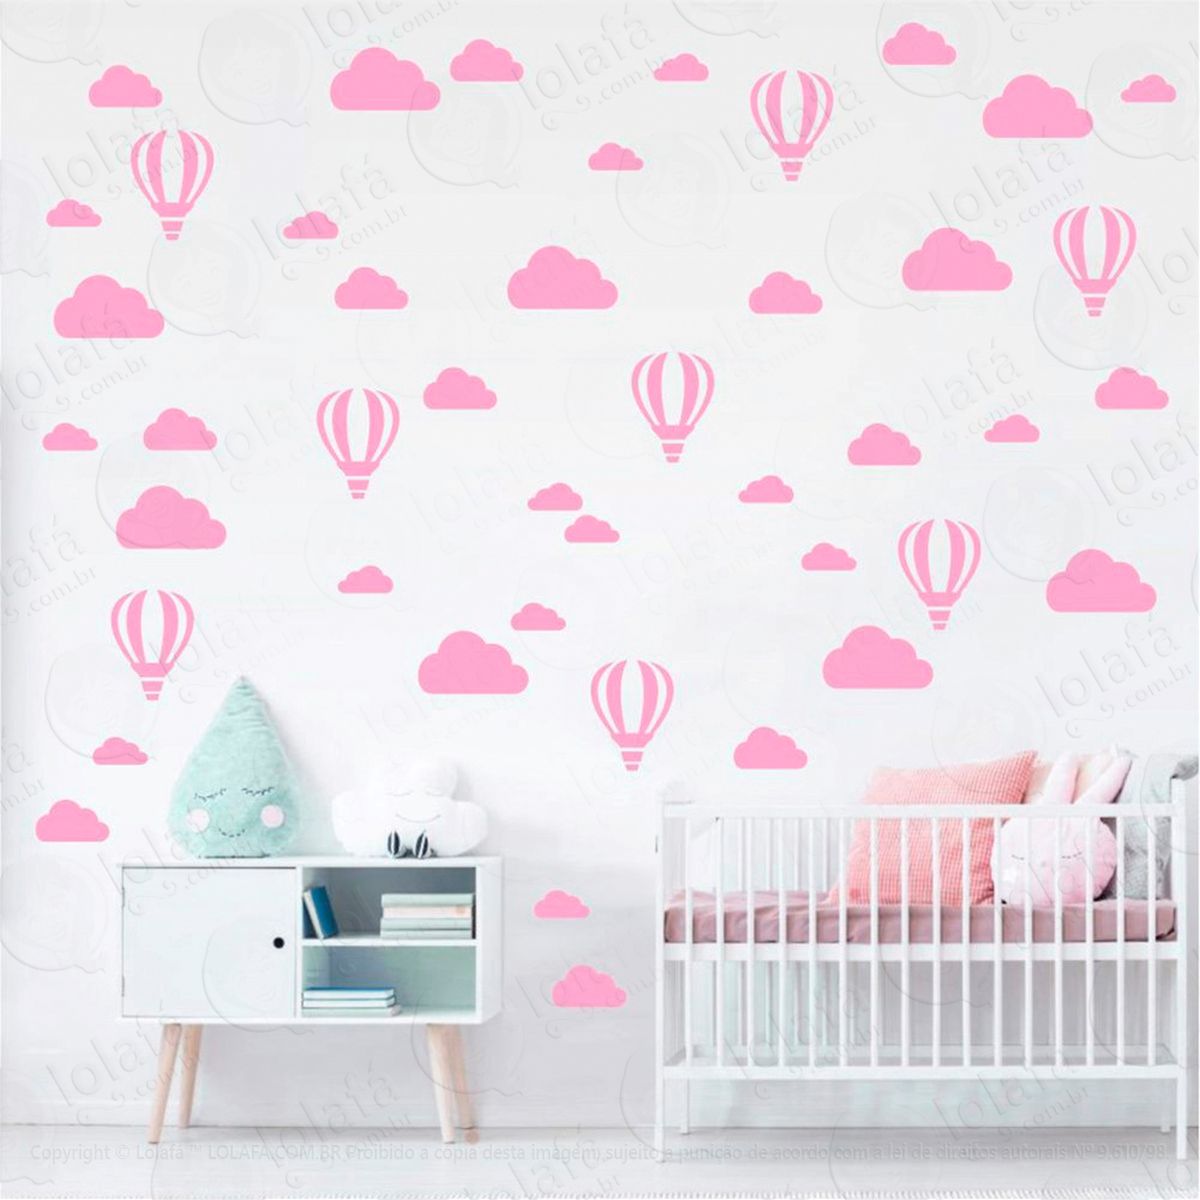 adesivos balões e nuvens 66 peças adesivos para quarto de bebê infantil - mod:159